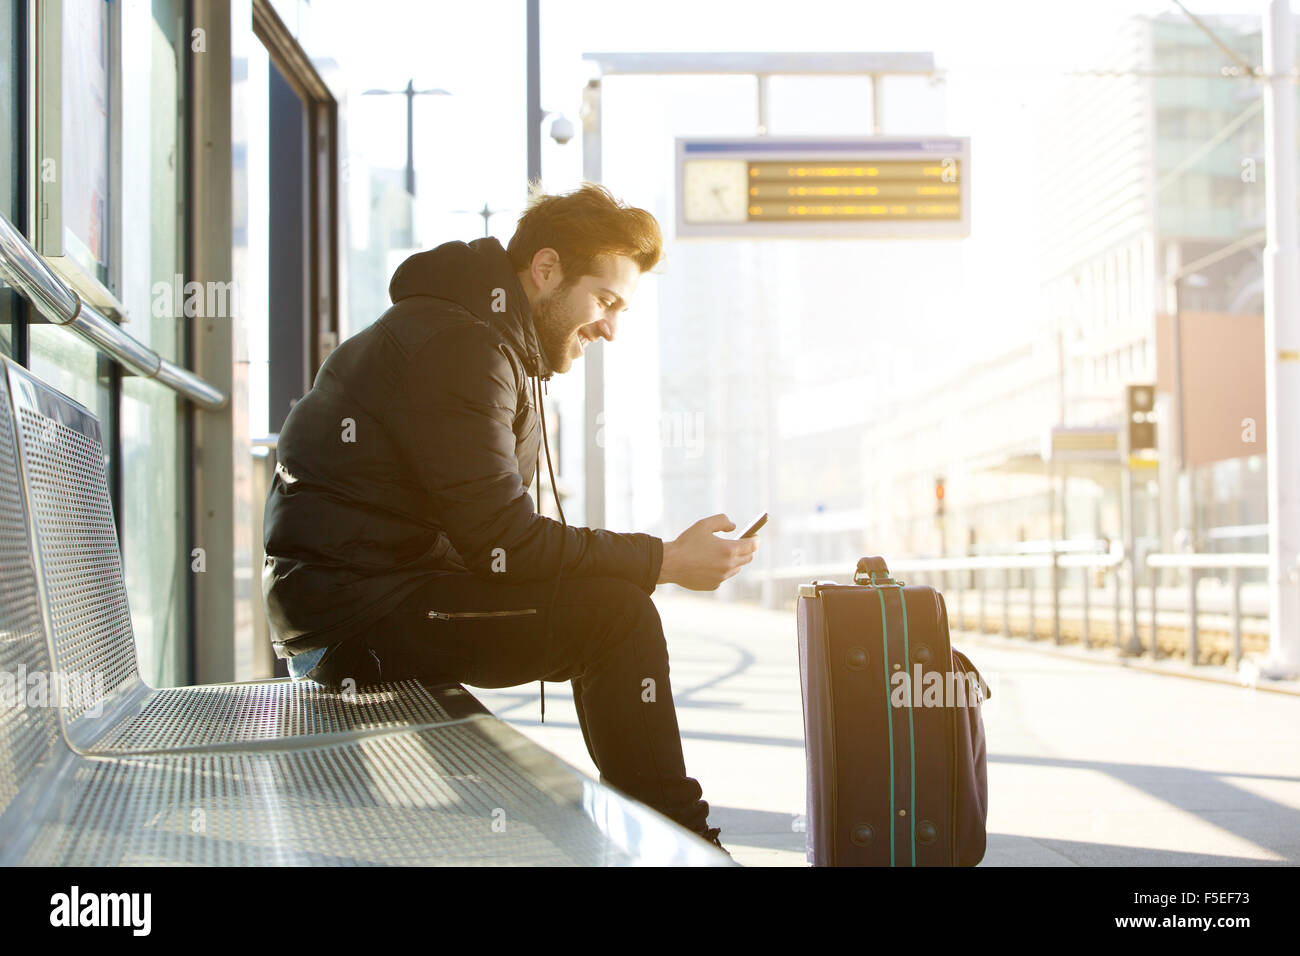 Ritratto laterale di un sorridente giovane uomo seduto con il telefono cellulare ed il sacco in attesa del treno Foto Stock